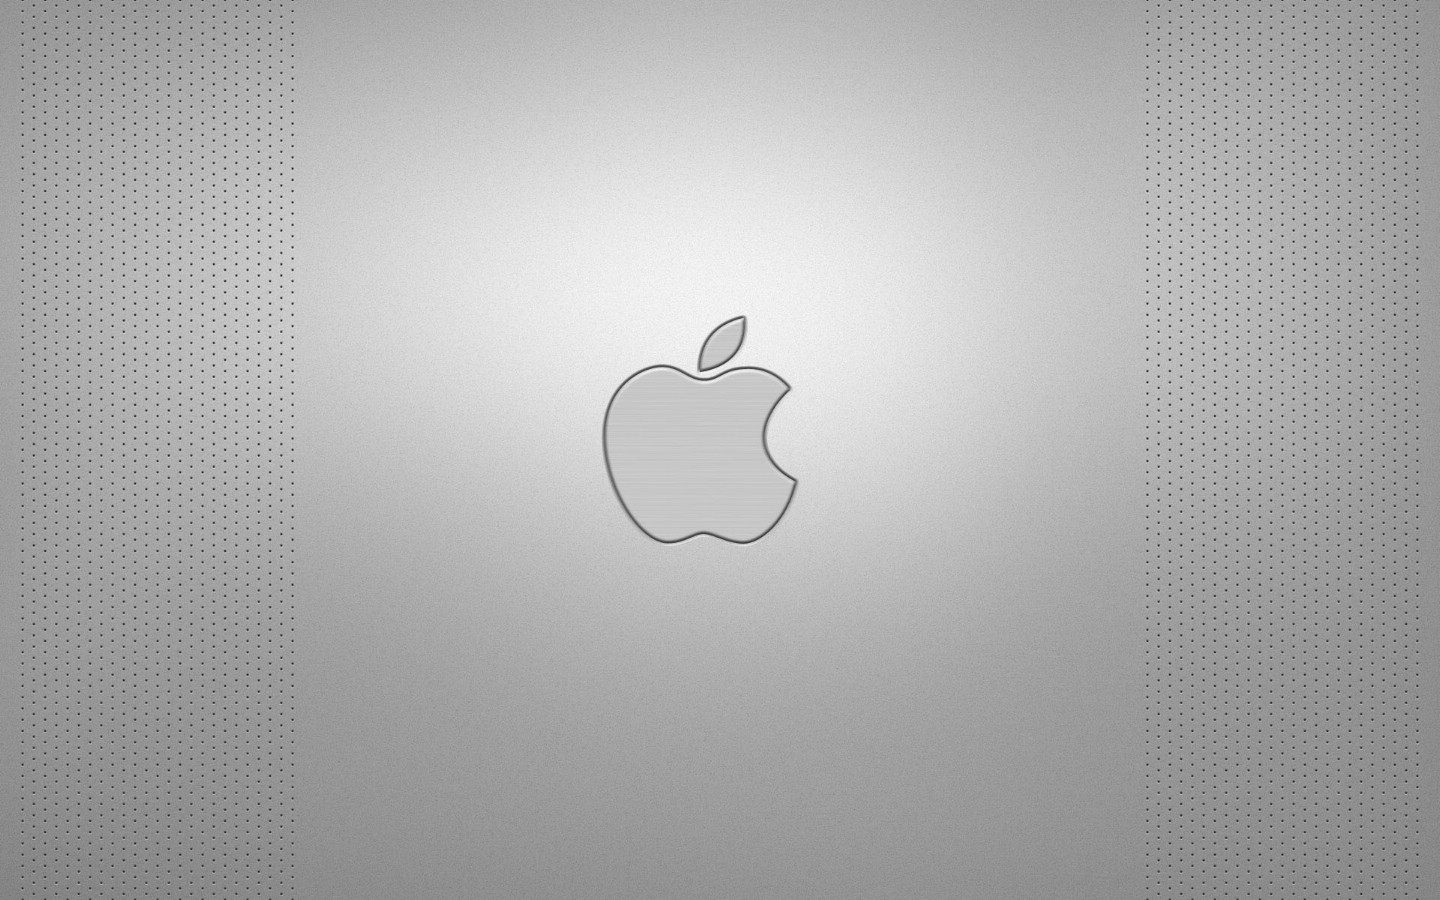 壁纸1440x900Apple主题桌面壁纸 Apple主题桌面壁纸 Apple主题桌面图片 Apple主题桌面素材 创意壁纸 创意图库 创意图片素材桌面壁纸